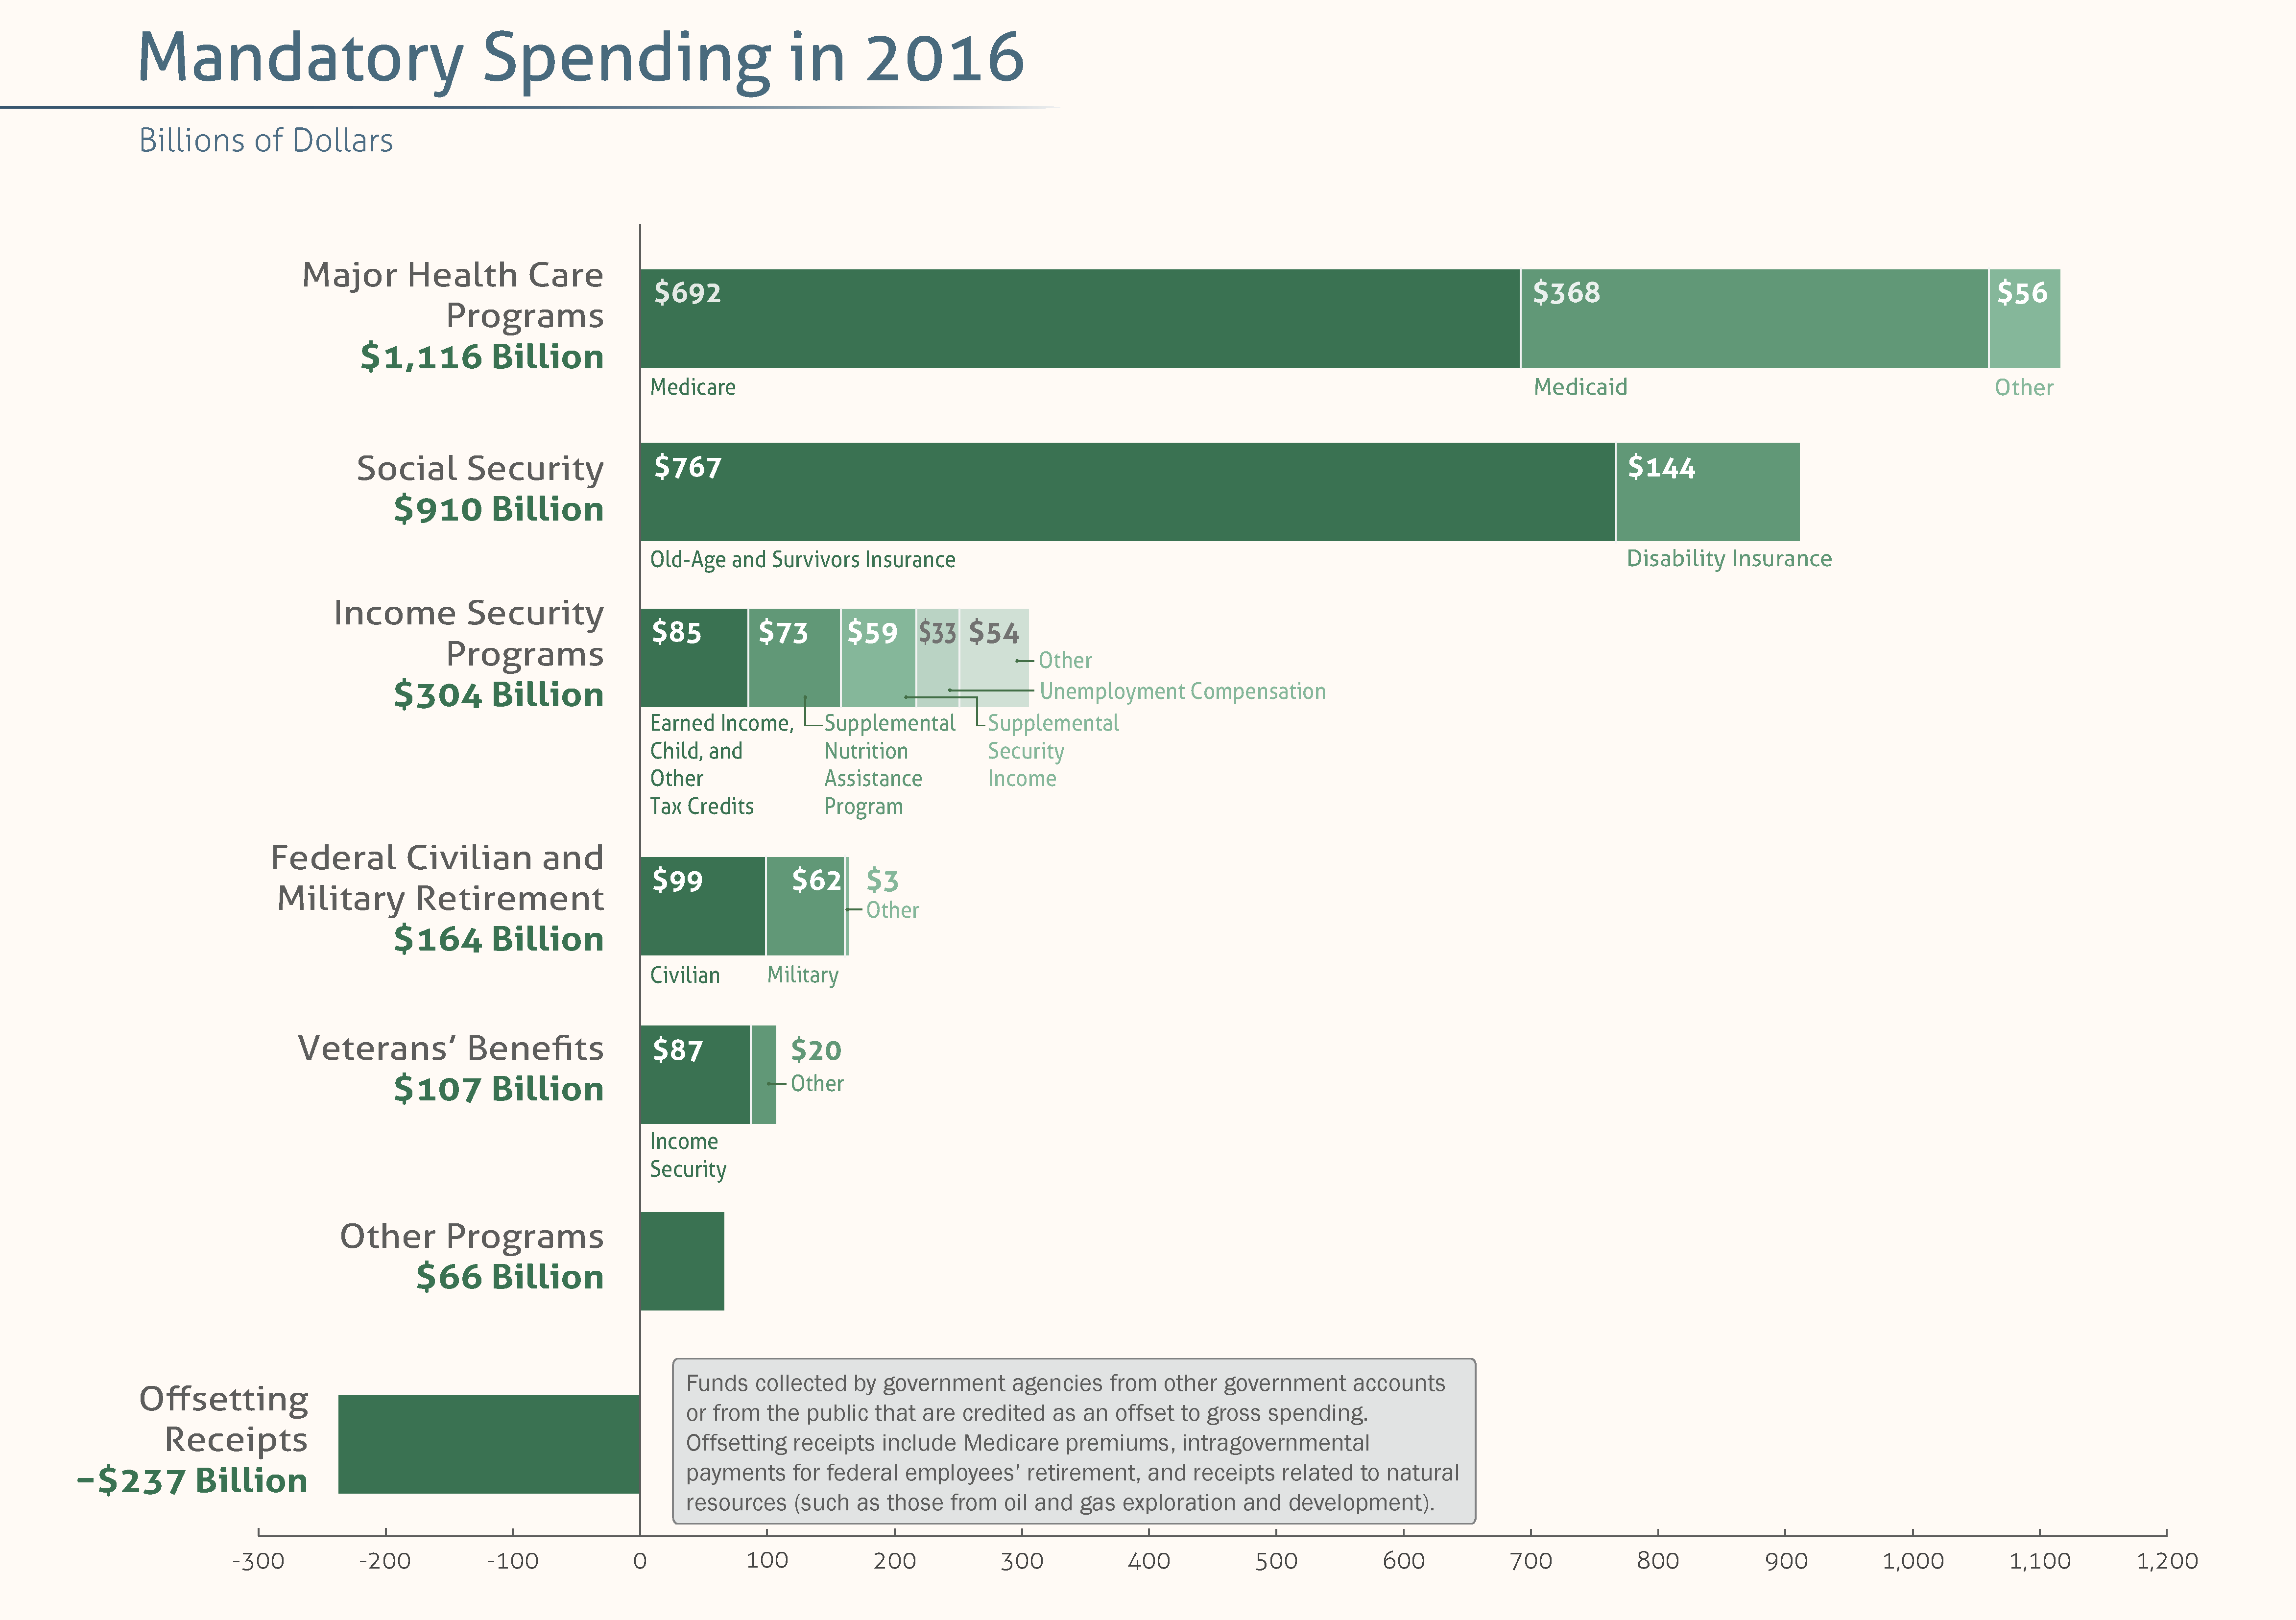 2016's Mandatory Spending